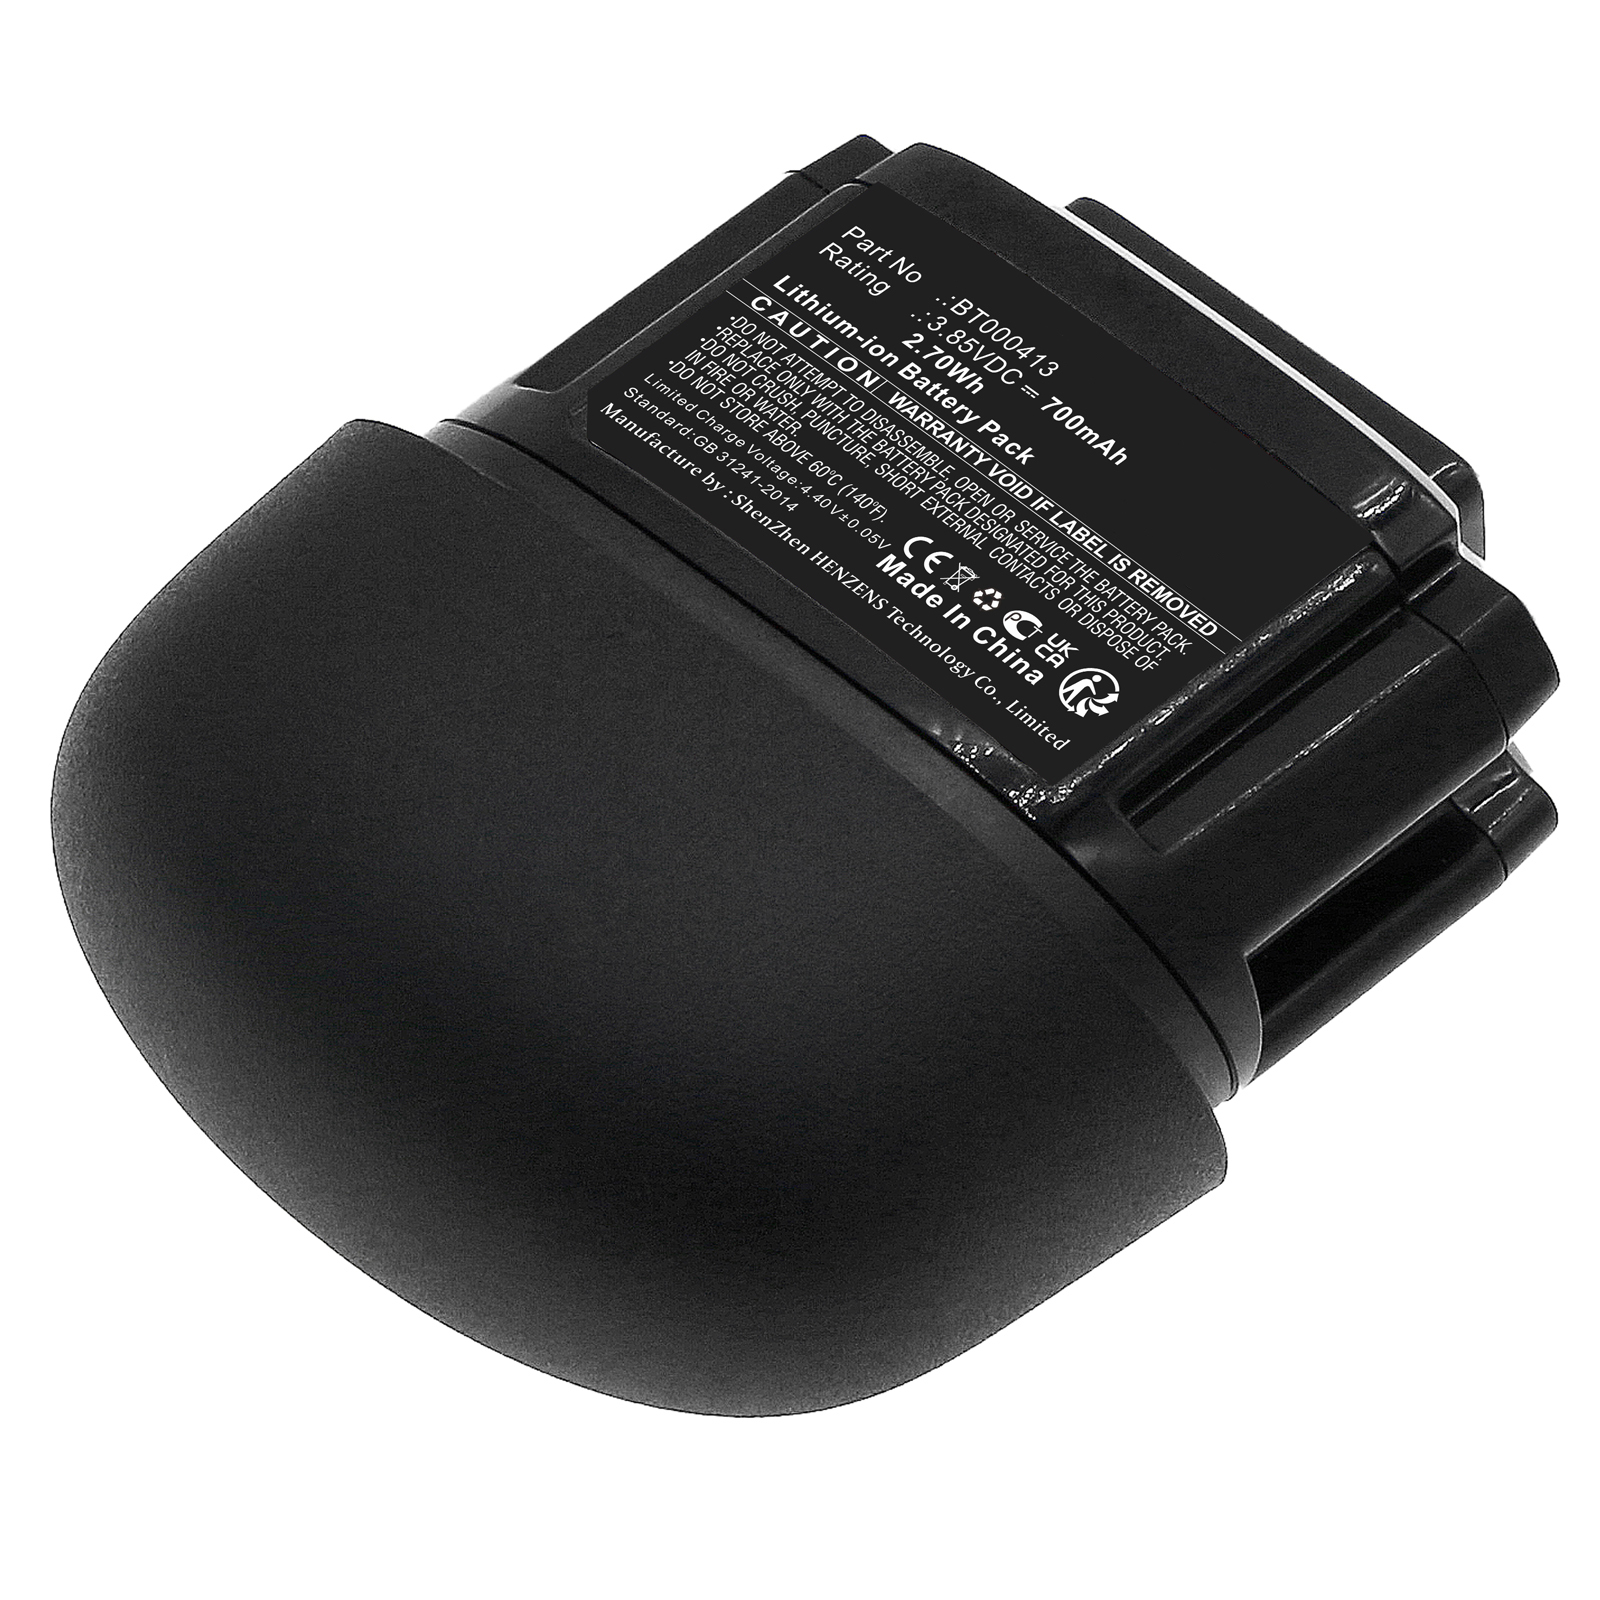 Synergy Digital Barcode Scanner Battery, Compatible with Zebra BT-000413-00 Barcode Scanner Battery (Li-ion, 3.85V, 700mAh)